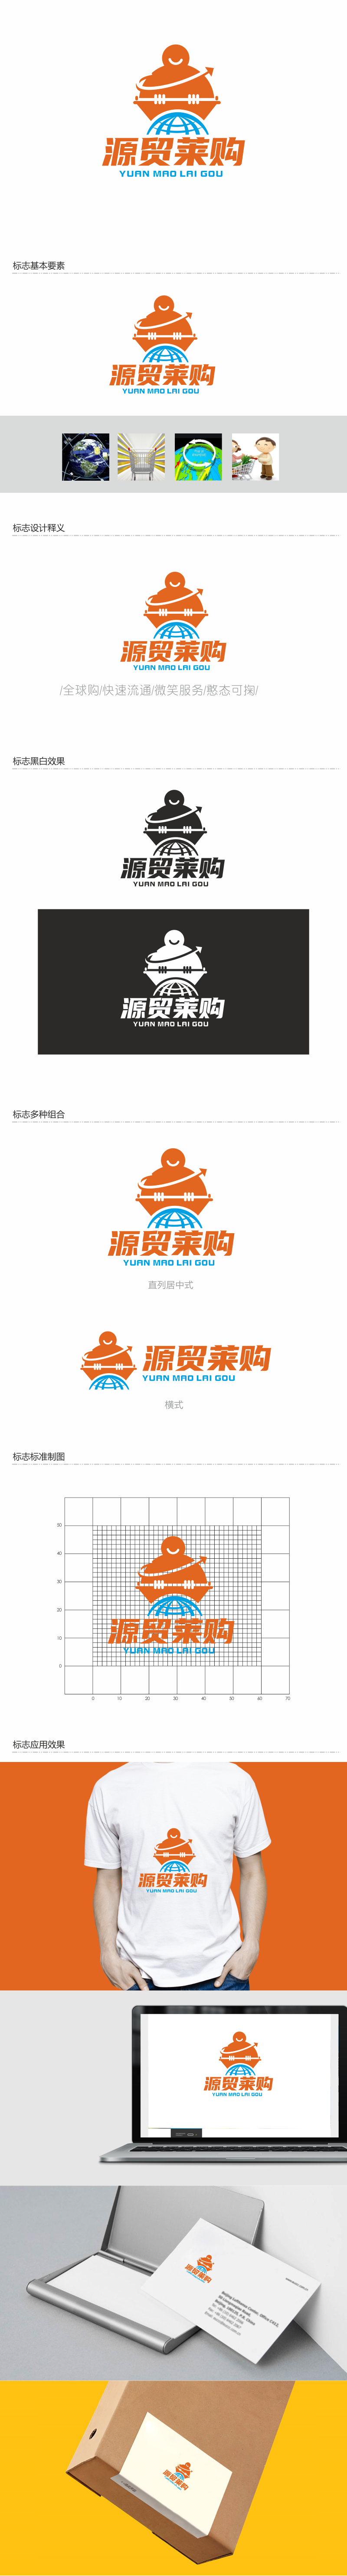 重庆斯码跃科技有限公司网购平台LOGO设计图0